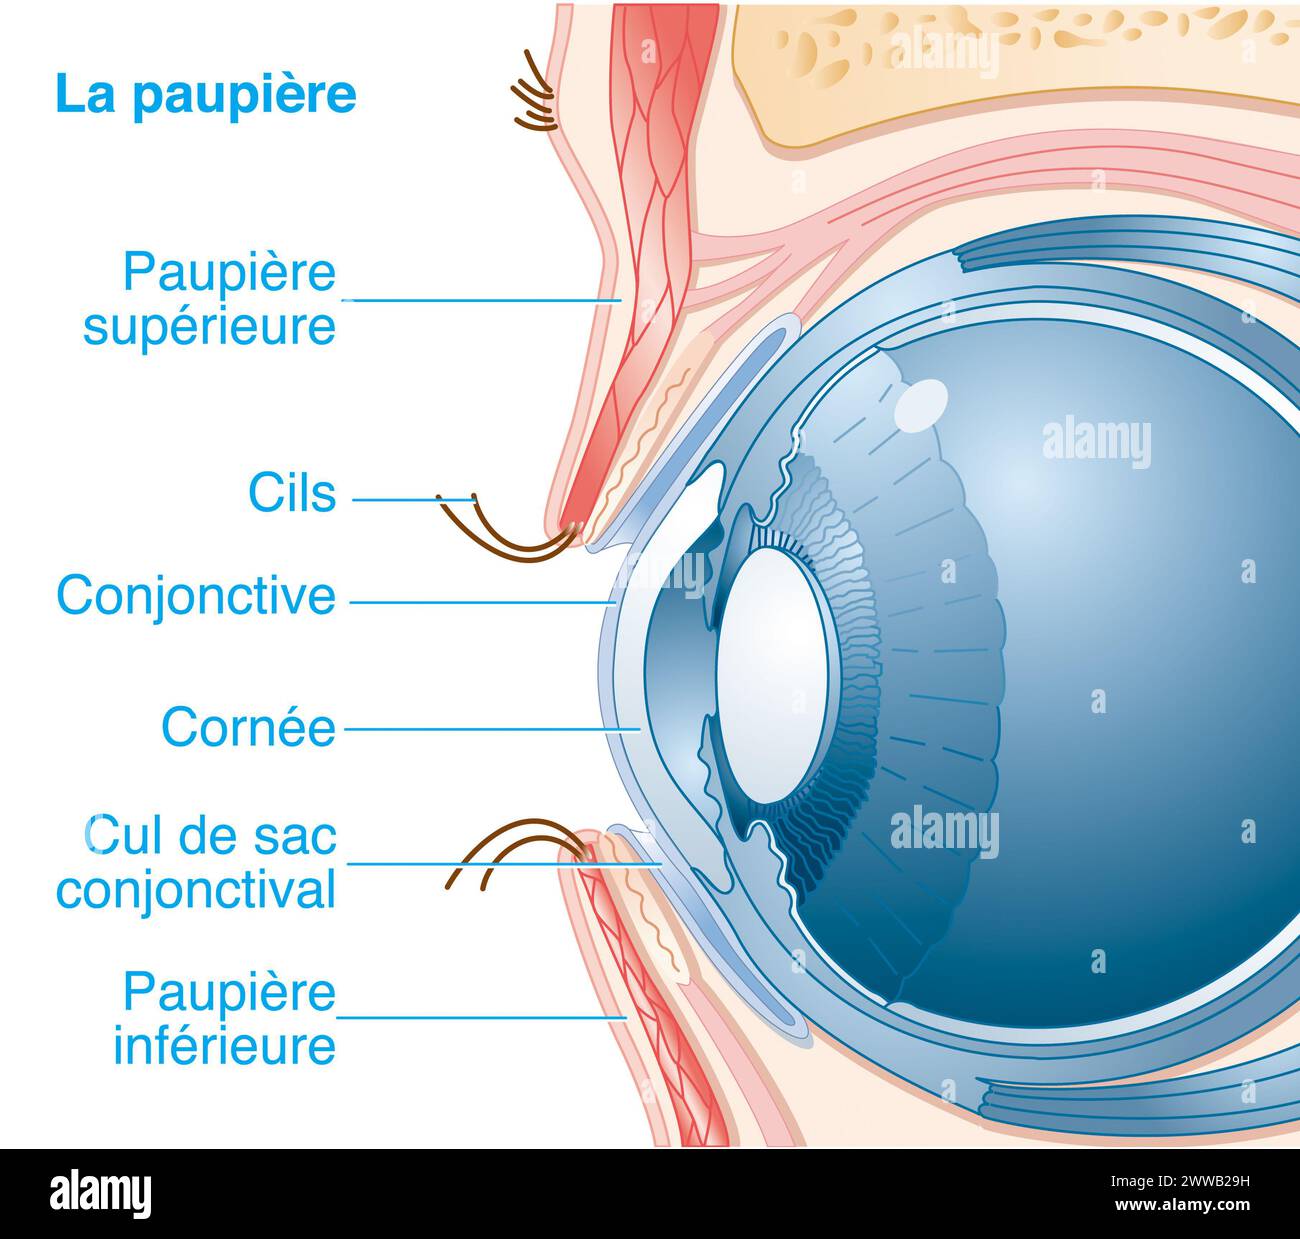 La paupière. Représentation en coupe sagittale médiane de l'œil et de la paupière avec mise en évidence de leurs structures. Banque D'Images